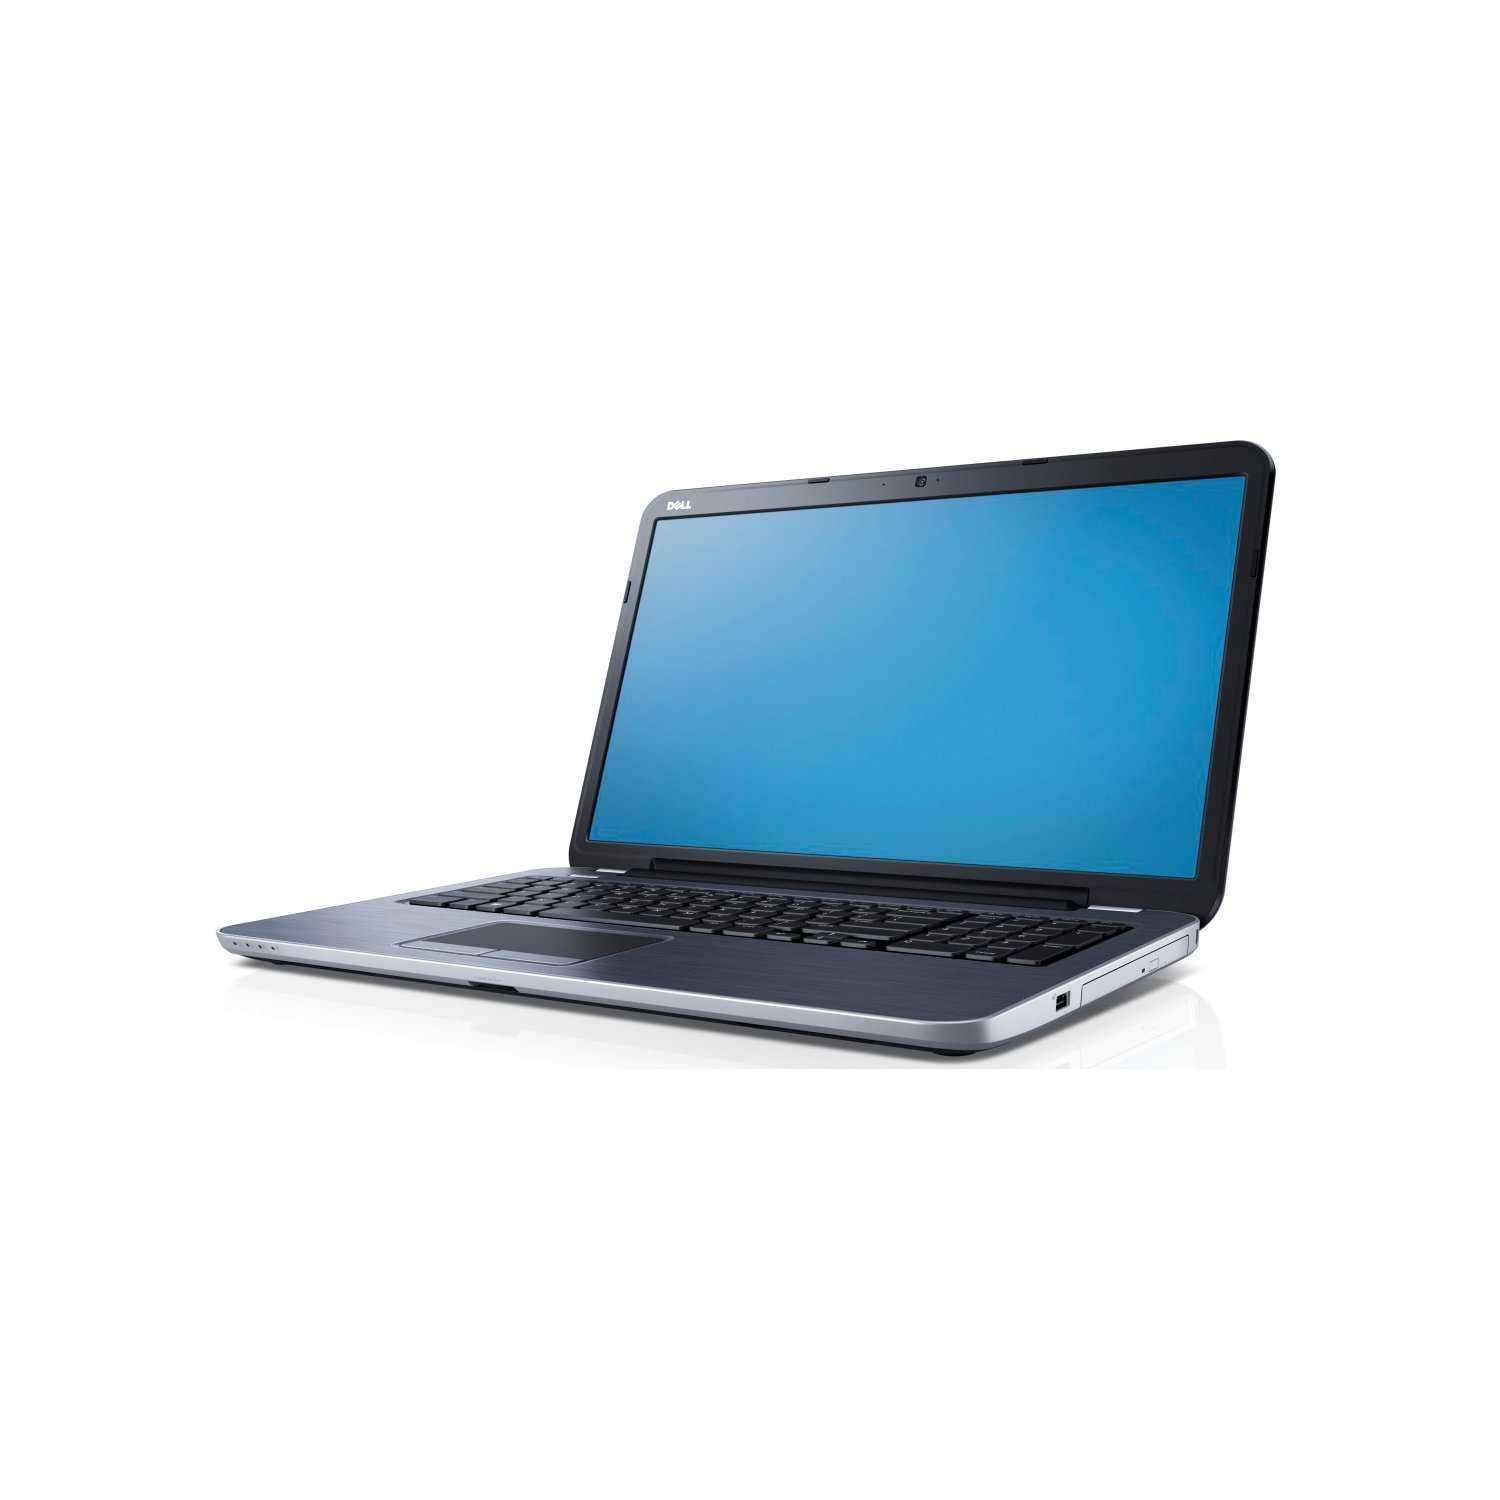 Ноутбук Dell Inspiron 5721 (210-40870silver) - подробные характеристики обзоры видео фото Цены в интернет-магазинах где можно купить ноутбук Dell Inspiron 5721 (210-40870silver)